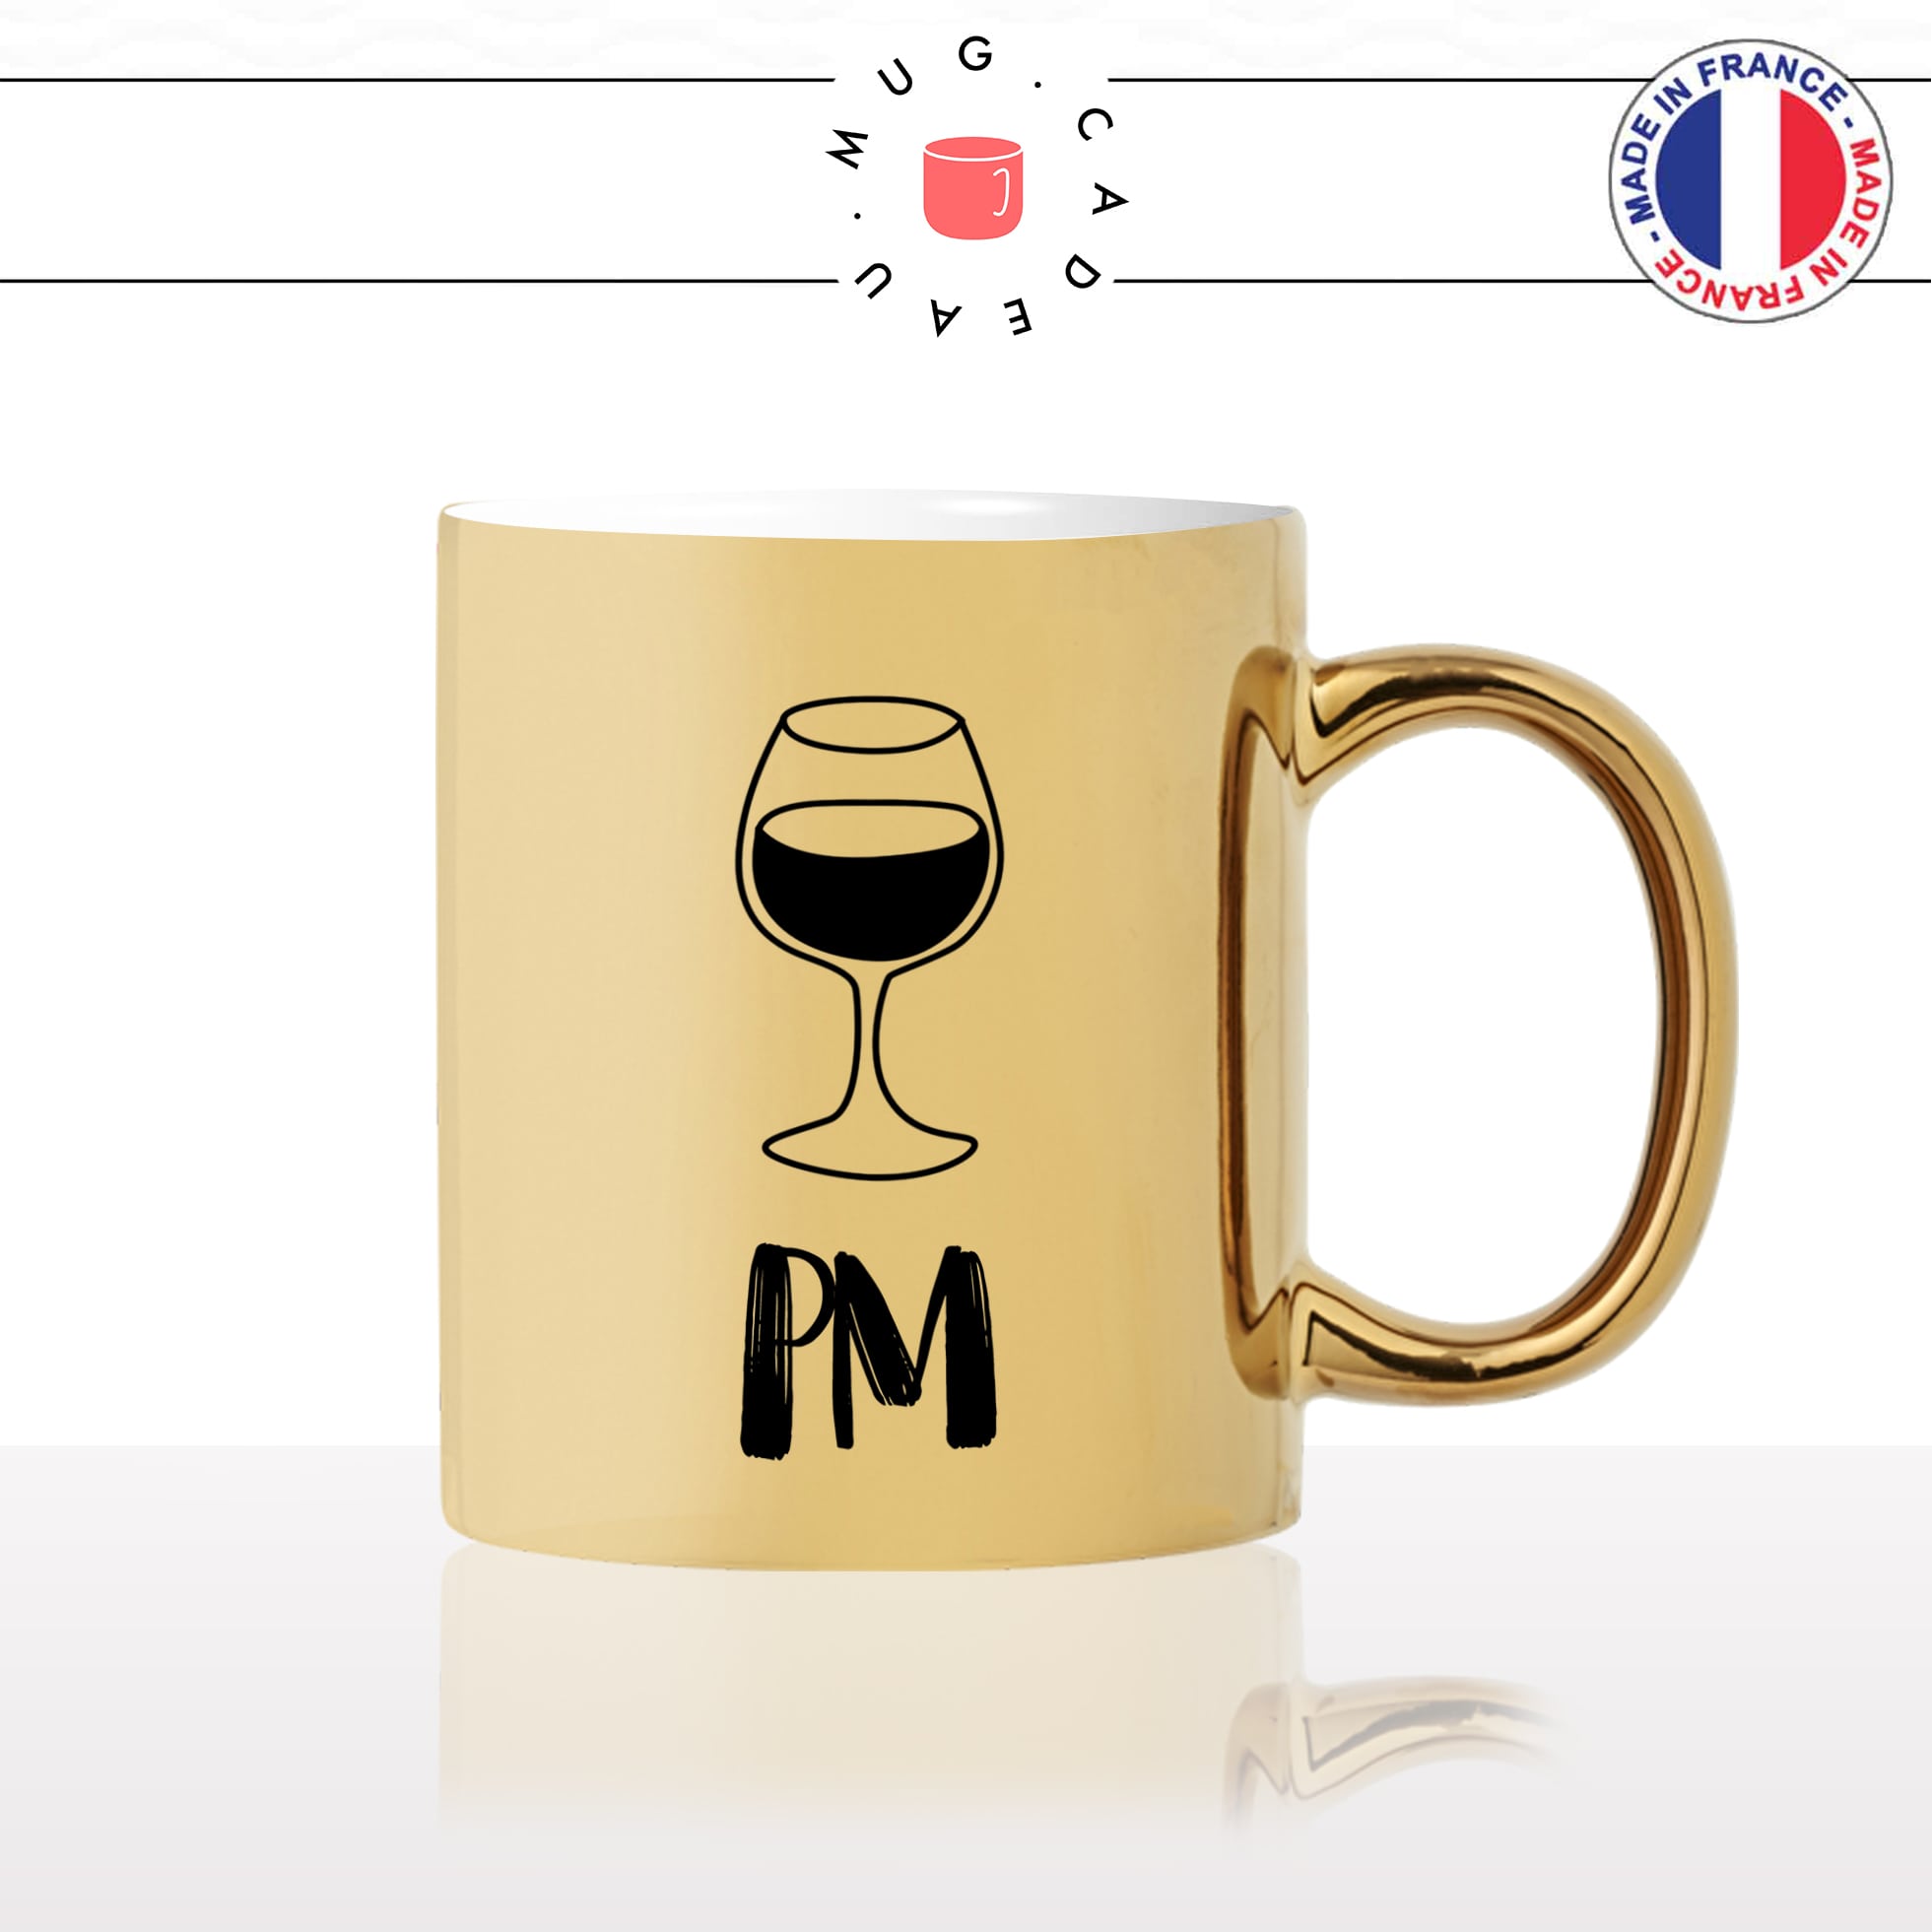 mug-tasse-doré-or-gold-am-pm-matin-apres-midi-soir-café-reveil-verre-de-vin-rouge-apéro-cool-humour-fun-idée-cadeau-personnalisé-café-thé2-min